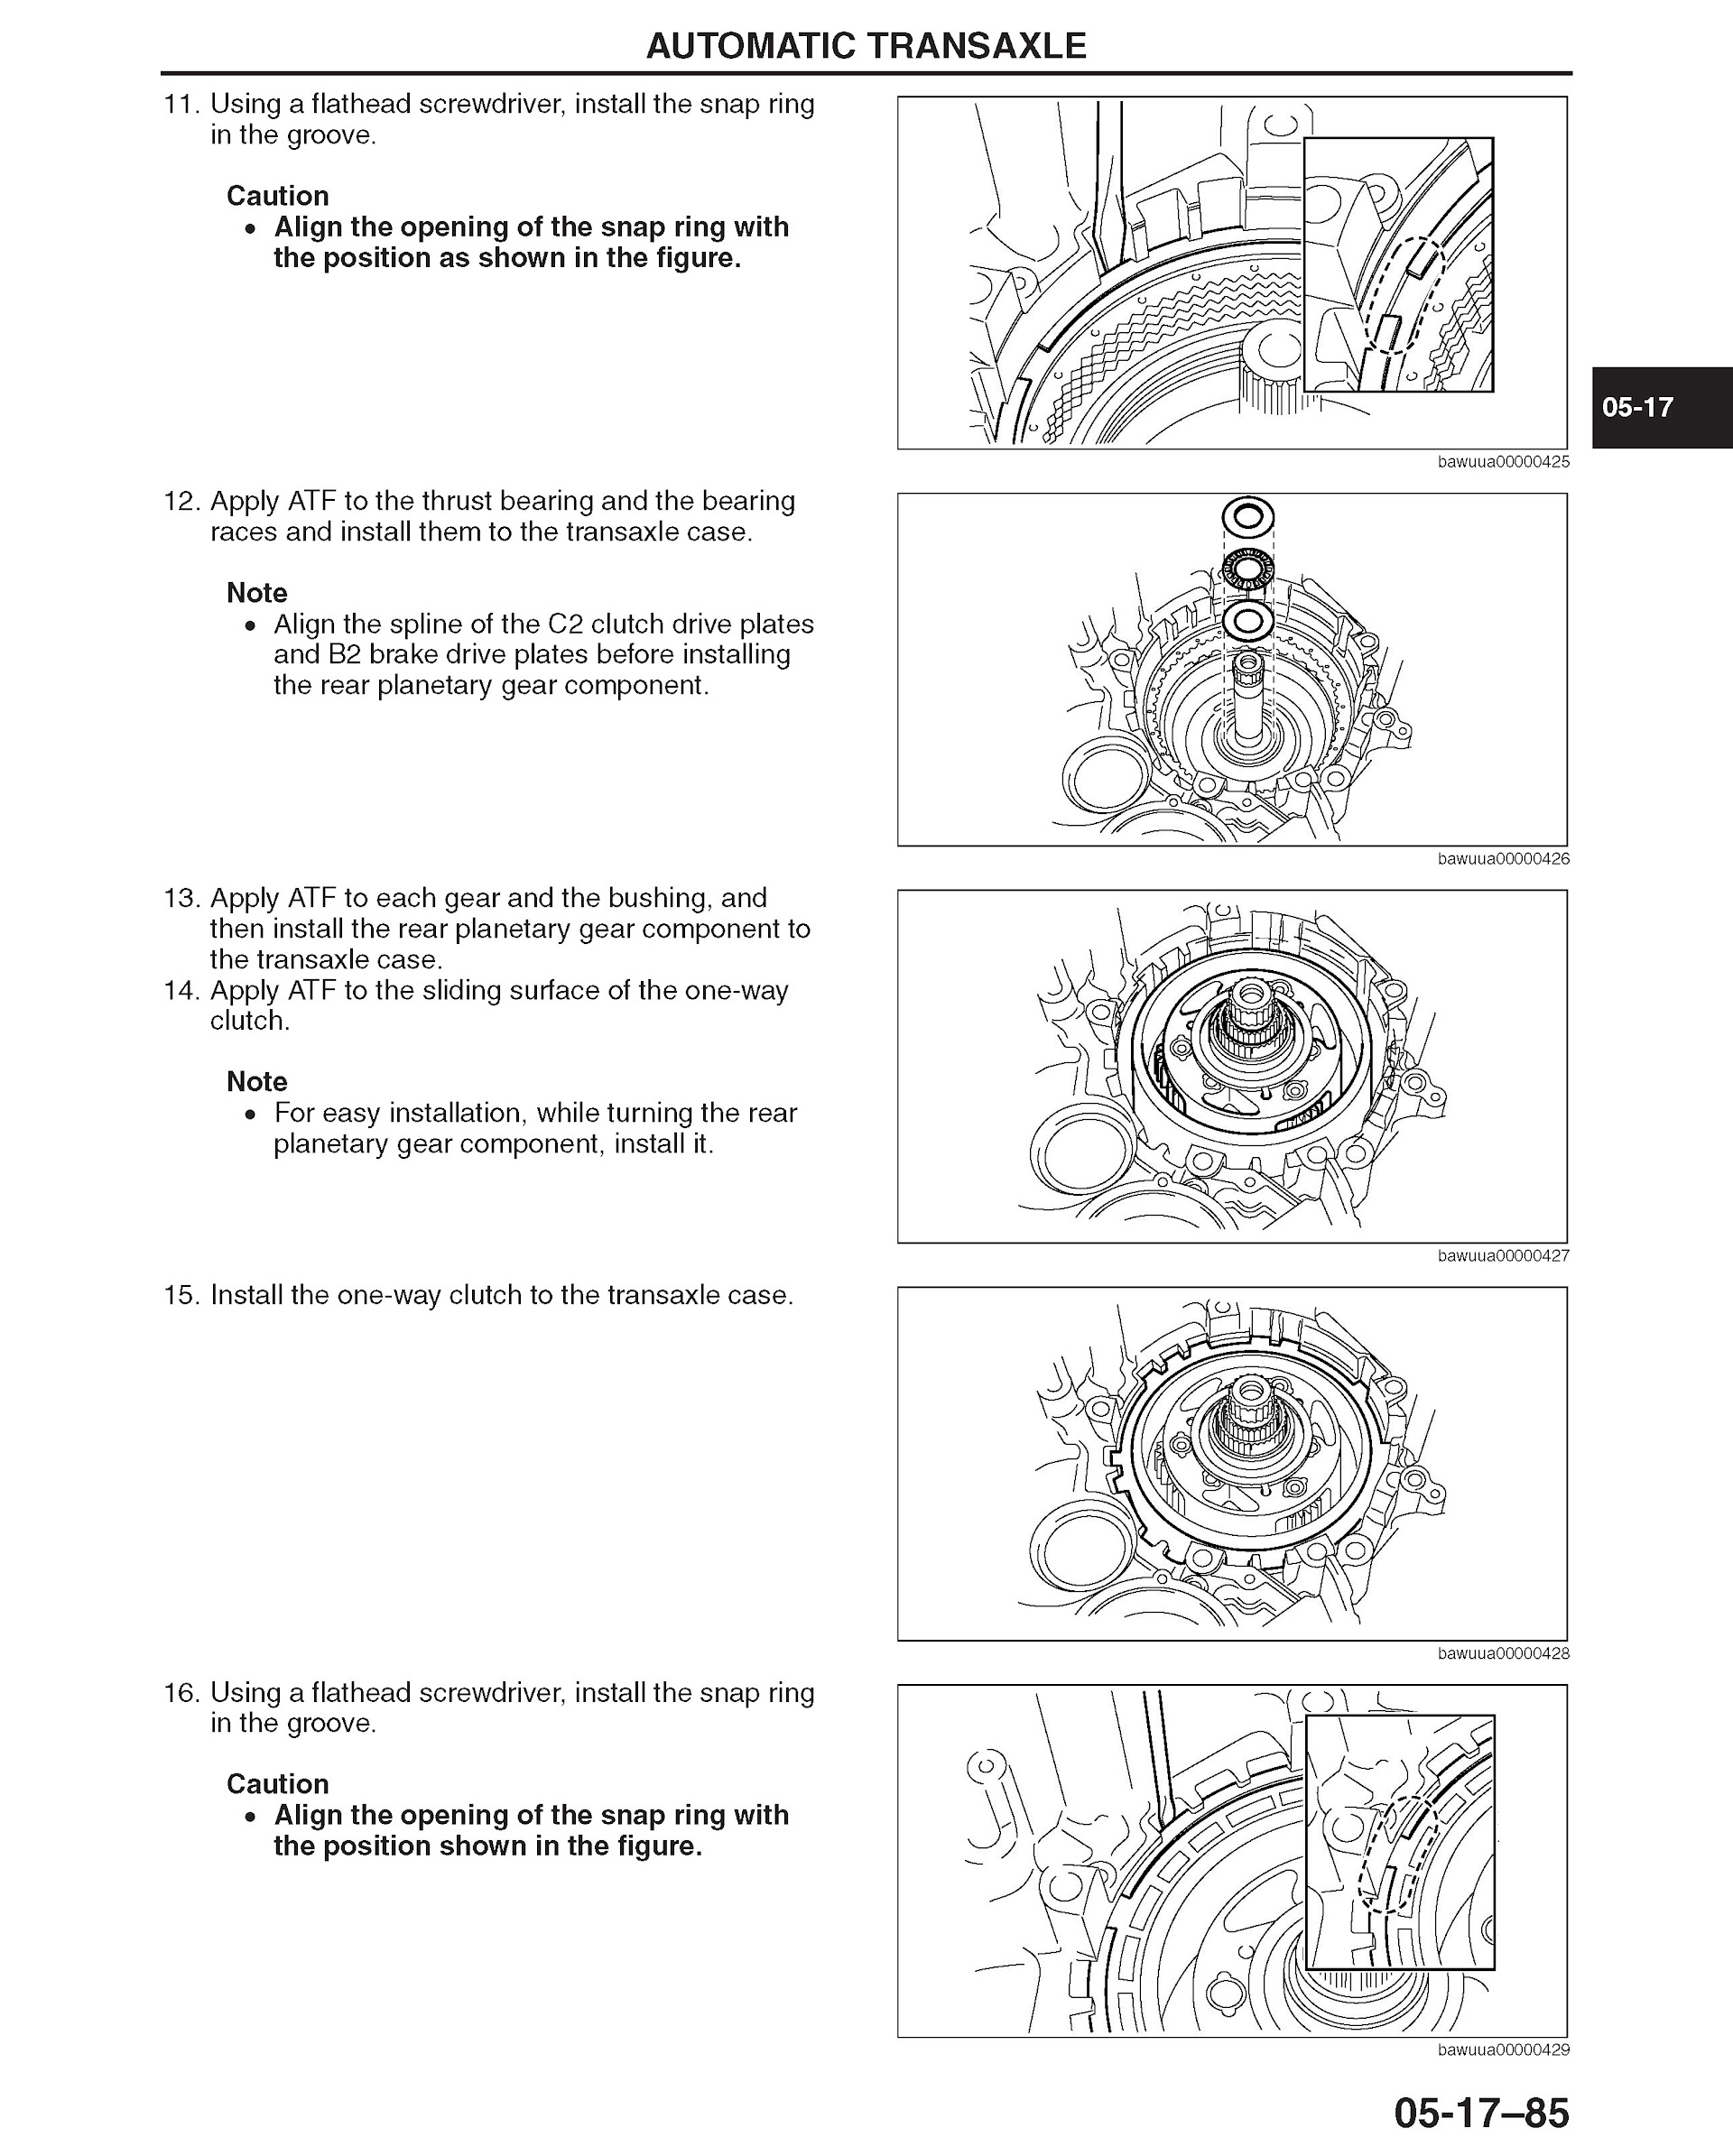 ONTENTS: 2009-2012 Mazda 6 Repair Manual